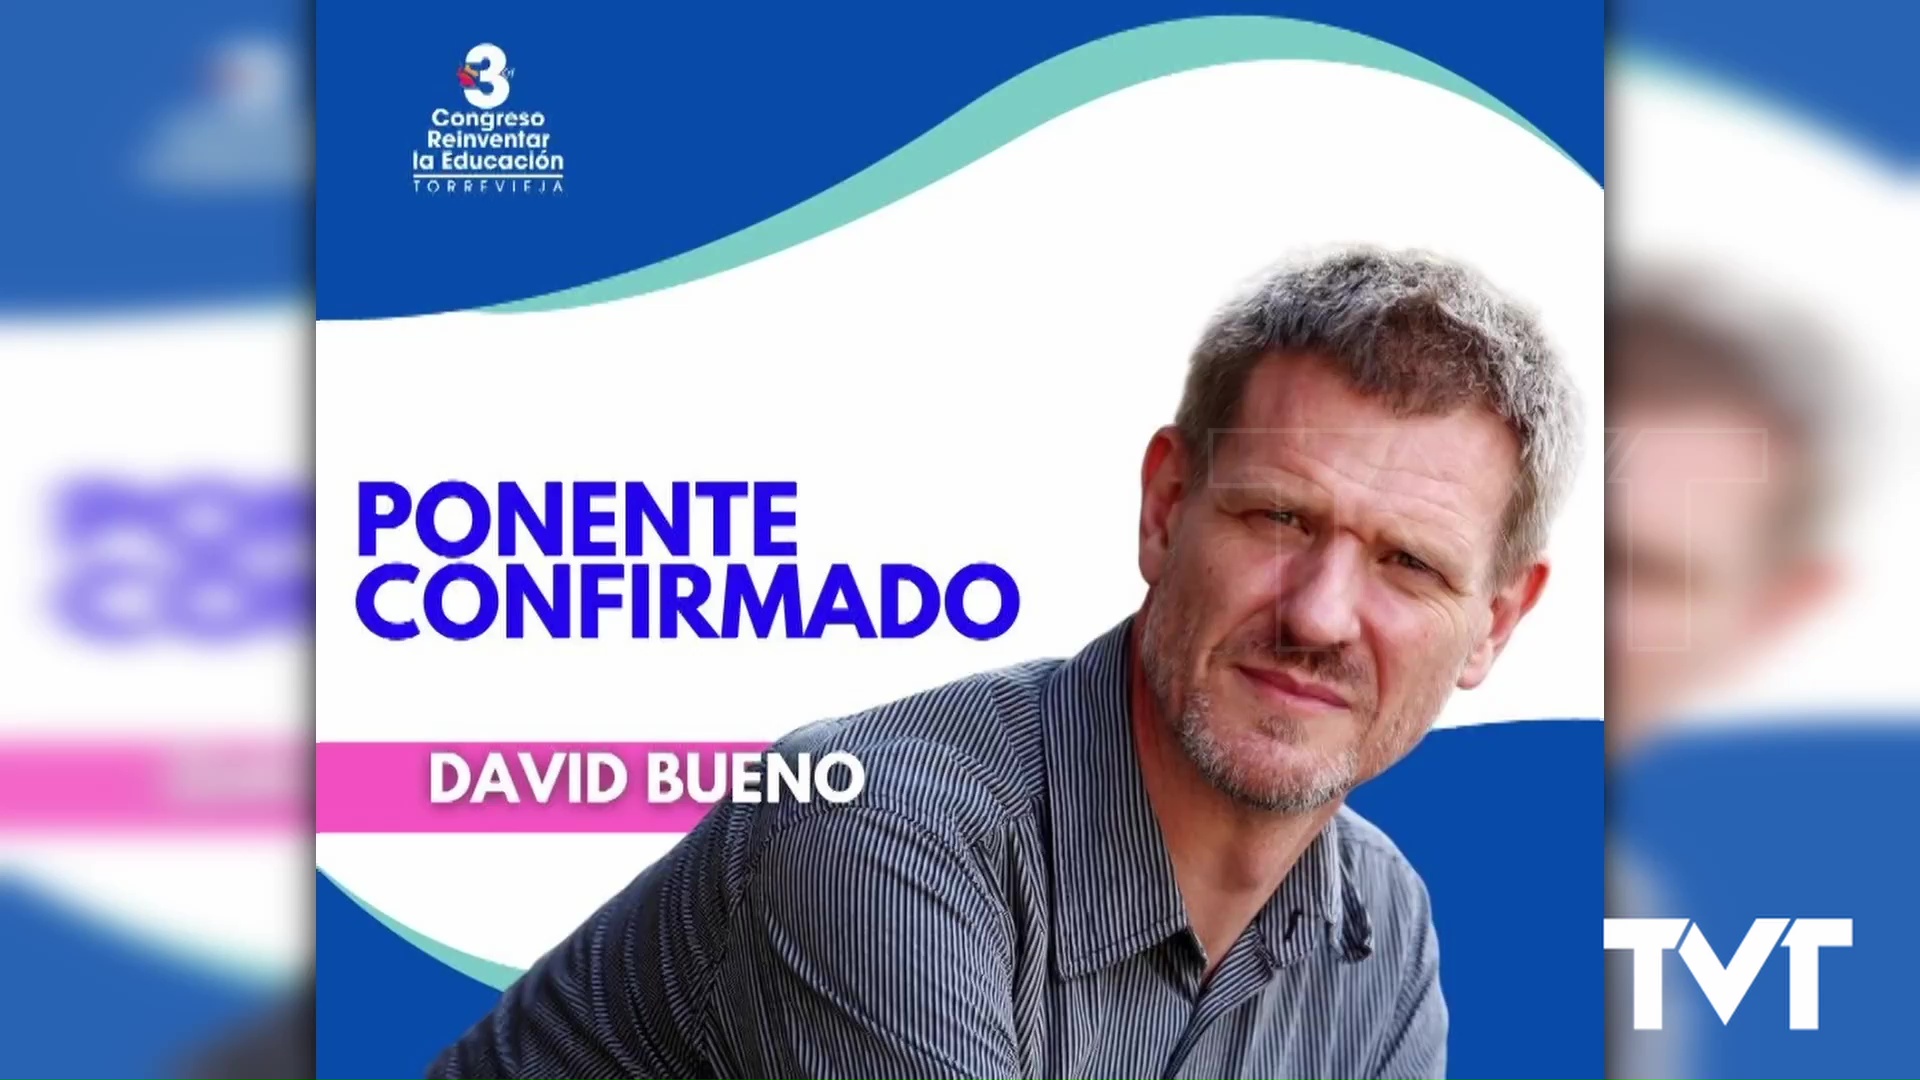 Imagen de David Bueno, segundo ponente confirmado para el III Congreso Educativo de Torrevieja 